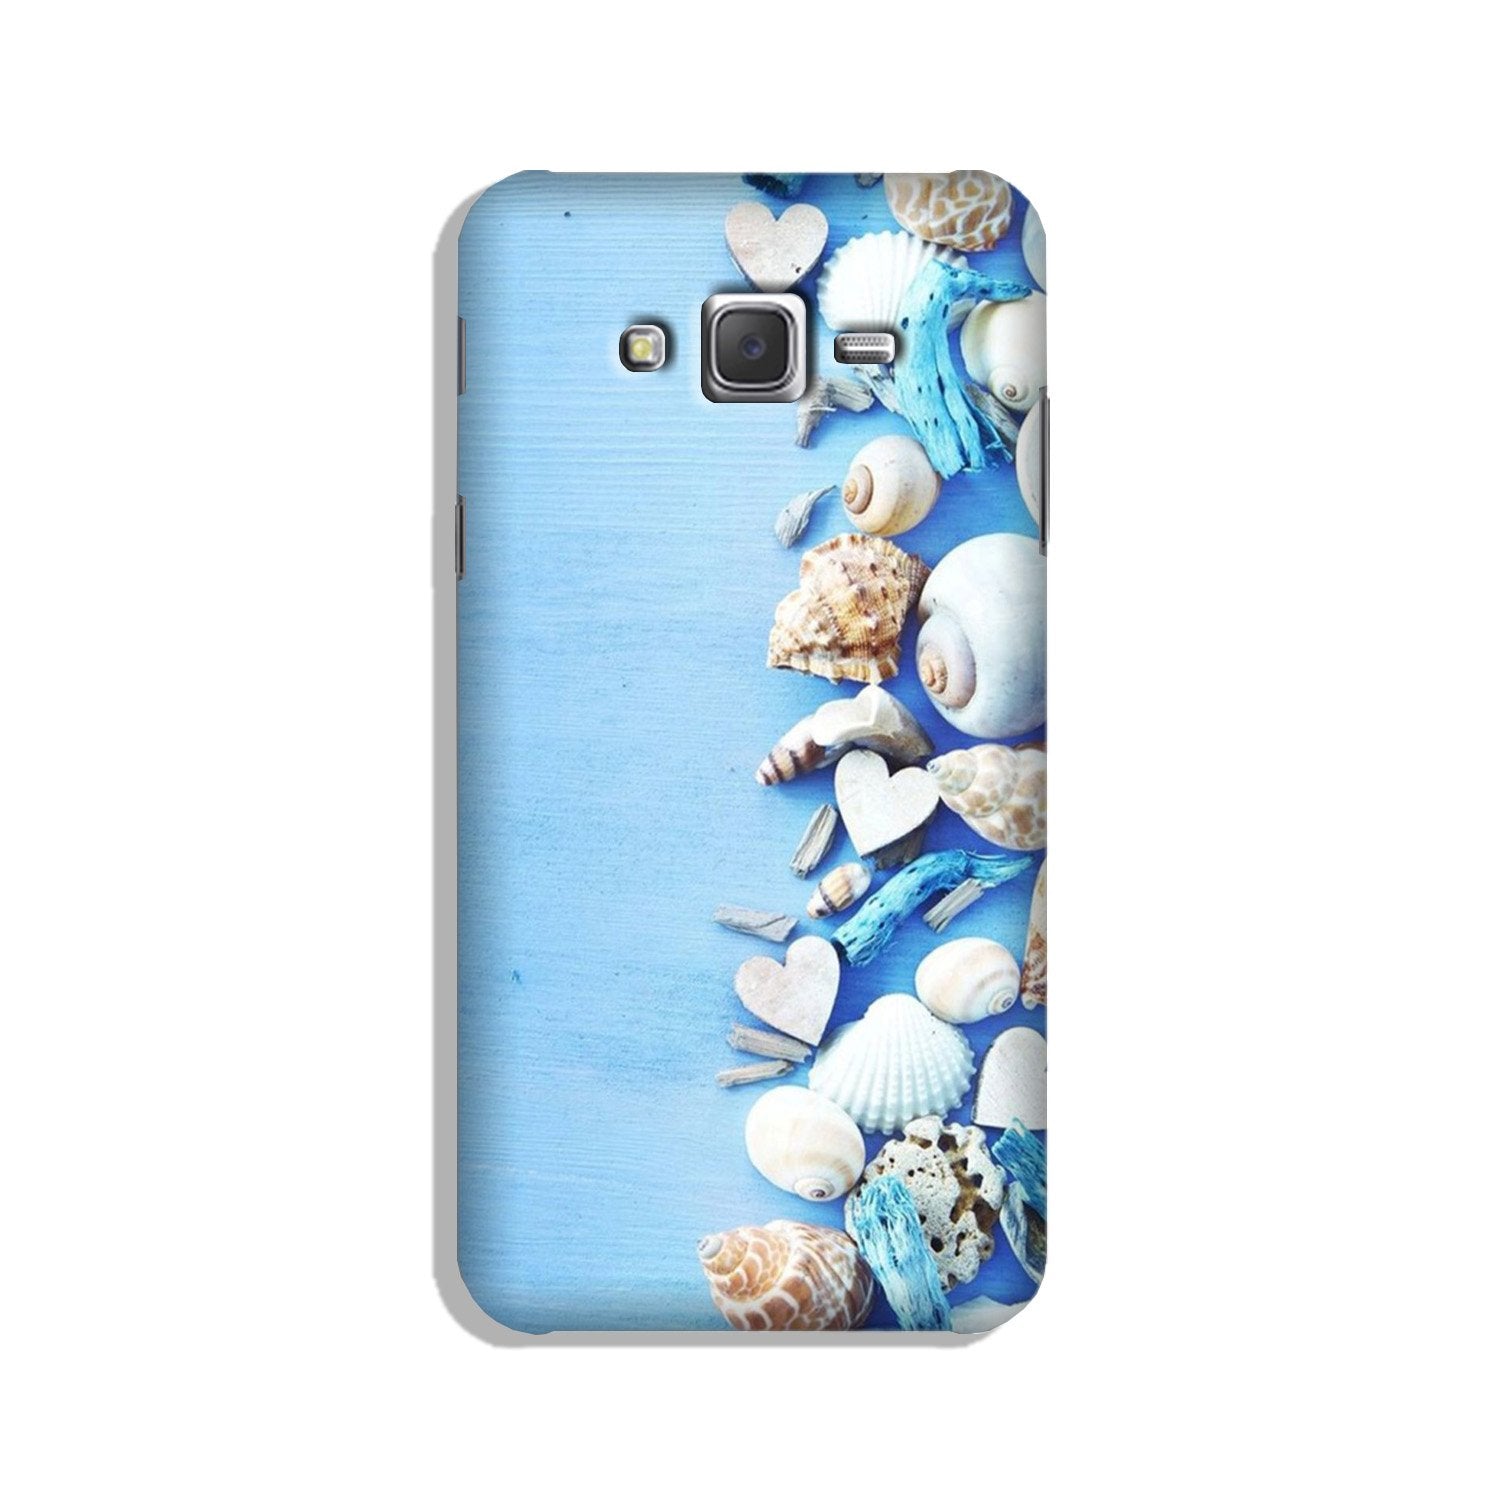 Sea Shells2 Case for Galaxy J7 (2015)